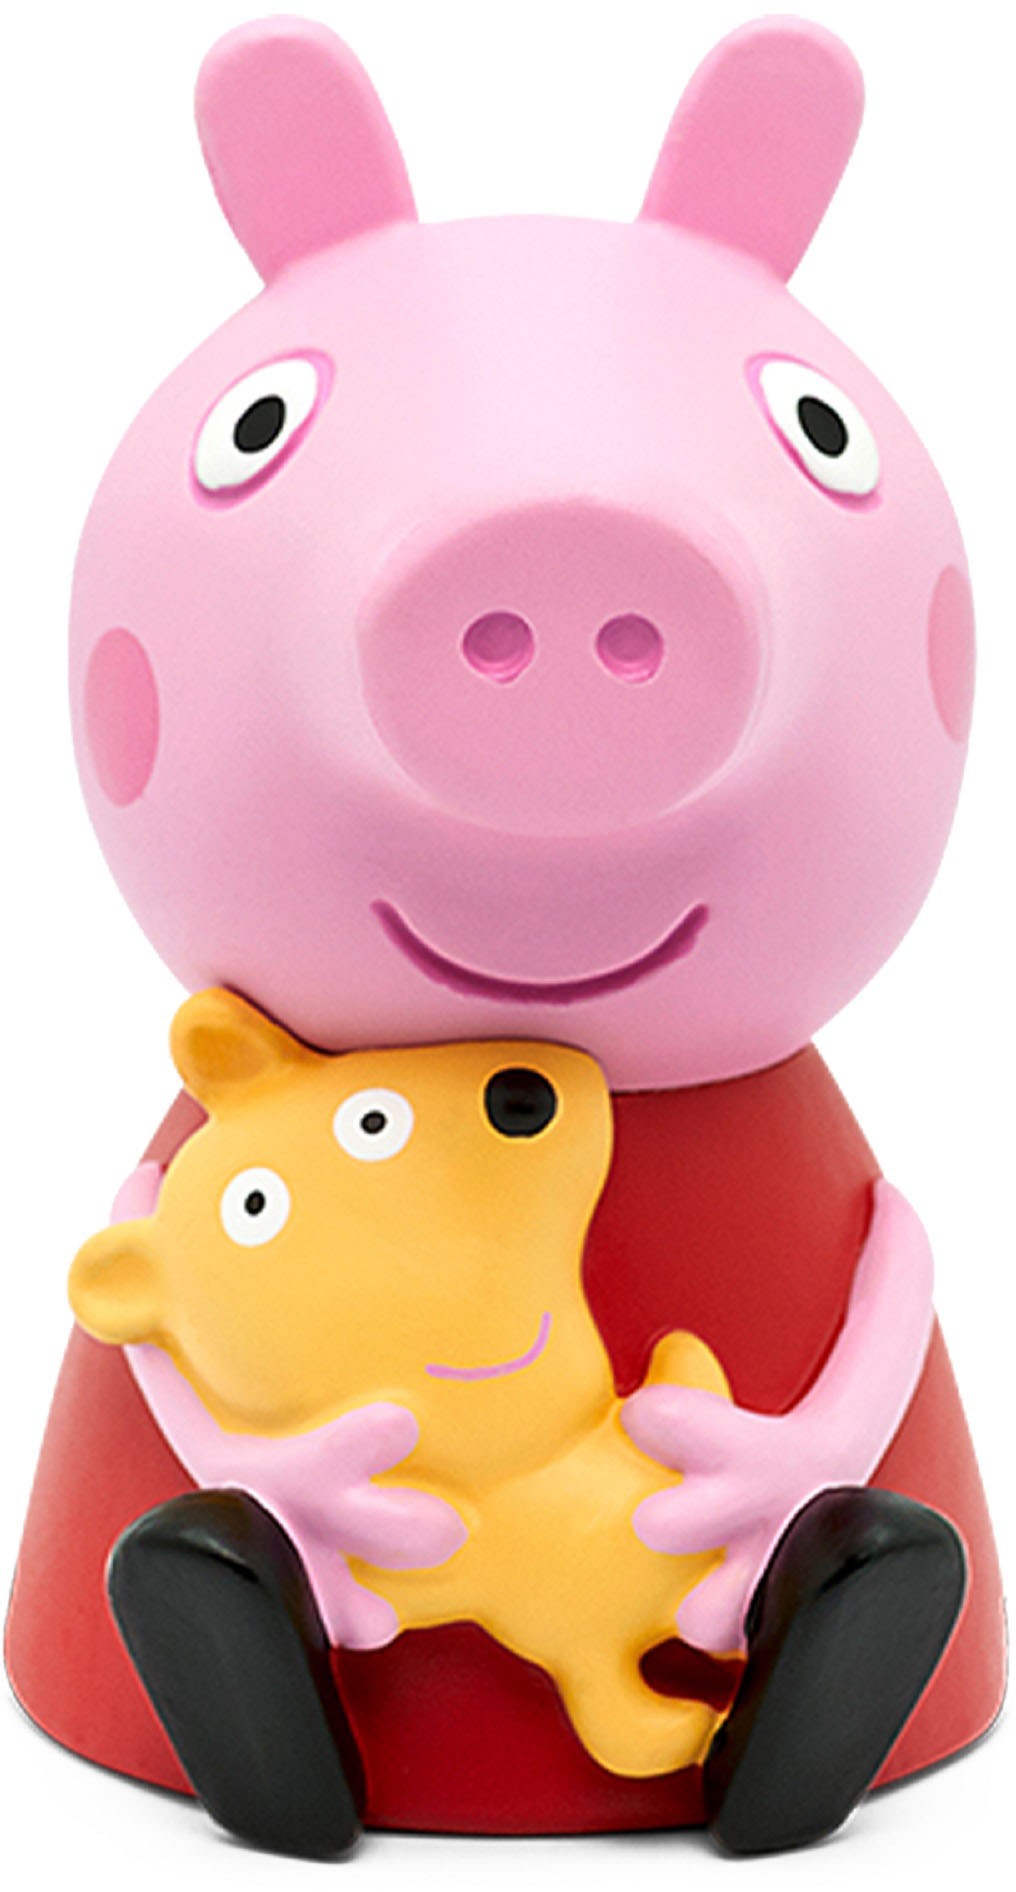 4x Tonies audio characters Bundle Pepper Pig Peter Rabbit Zog & Winnie Pooh 